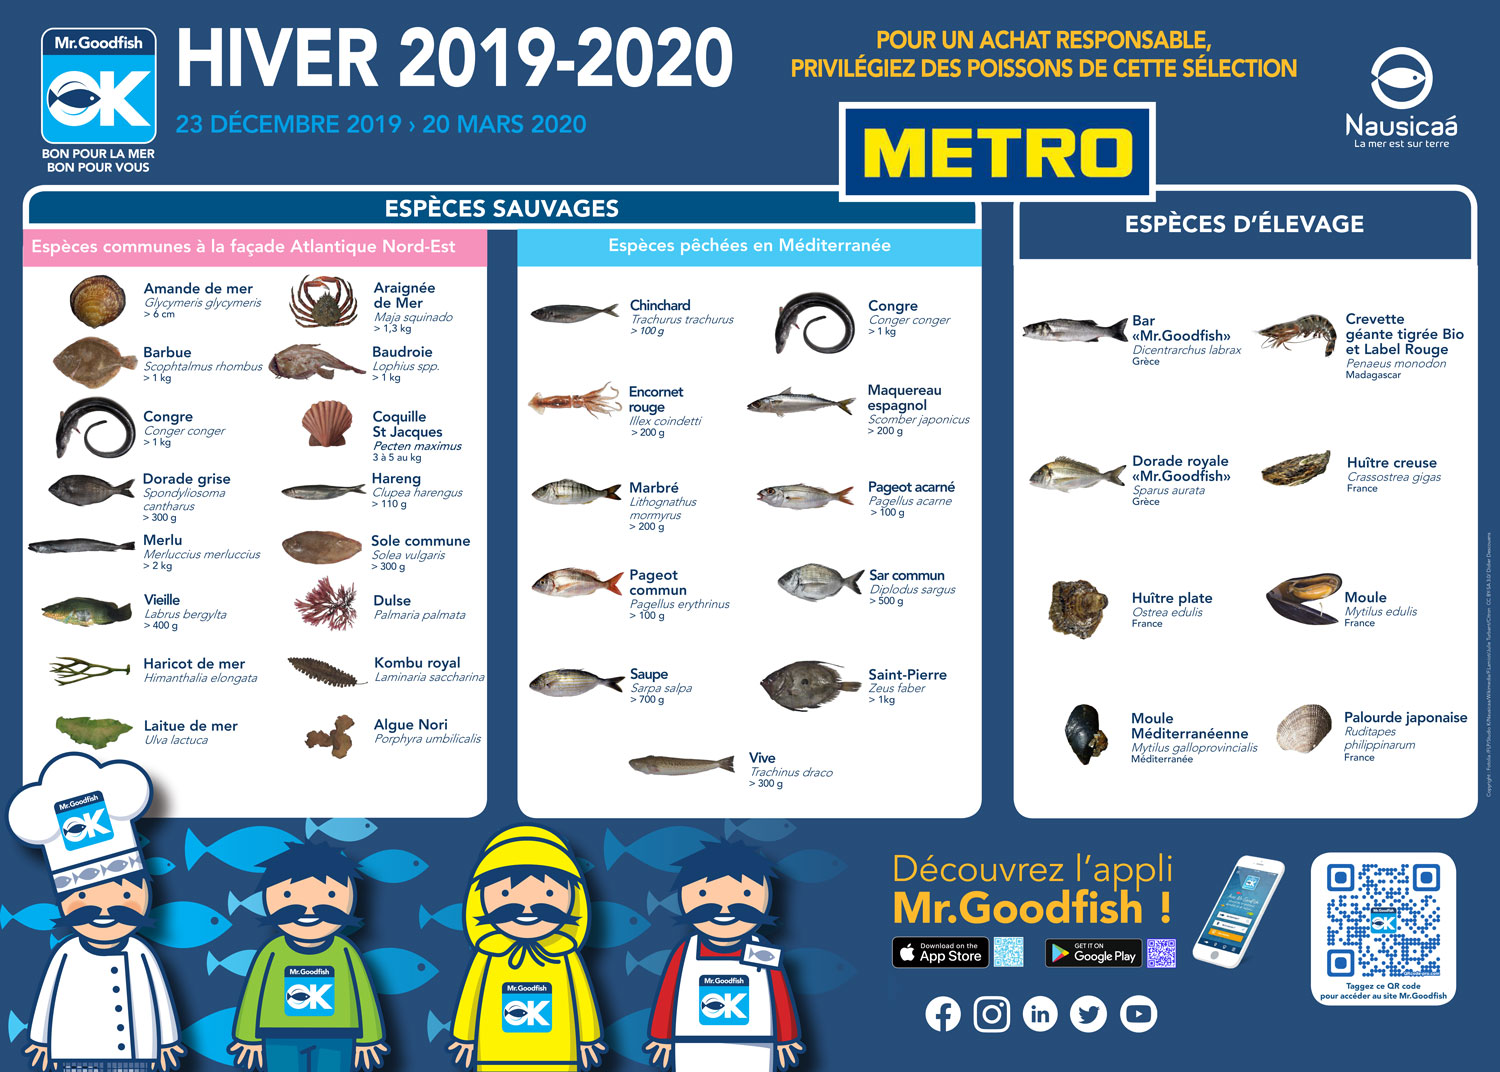 Le poster Mister Goodish pour l’hiver 2019-2020 : quels poissons peut-on consommer de manière responsable en hiver ? © Globe Reporters